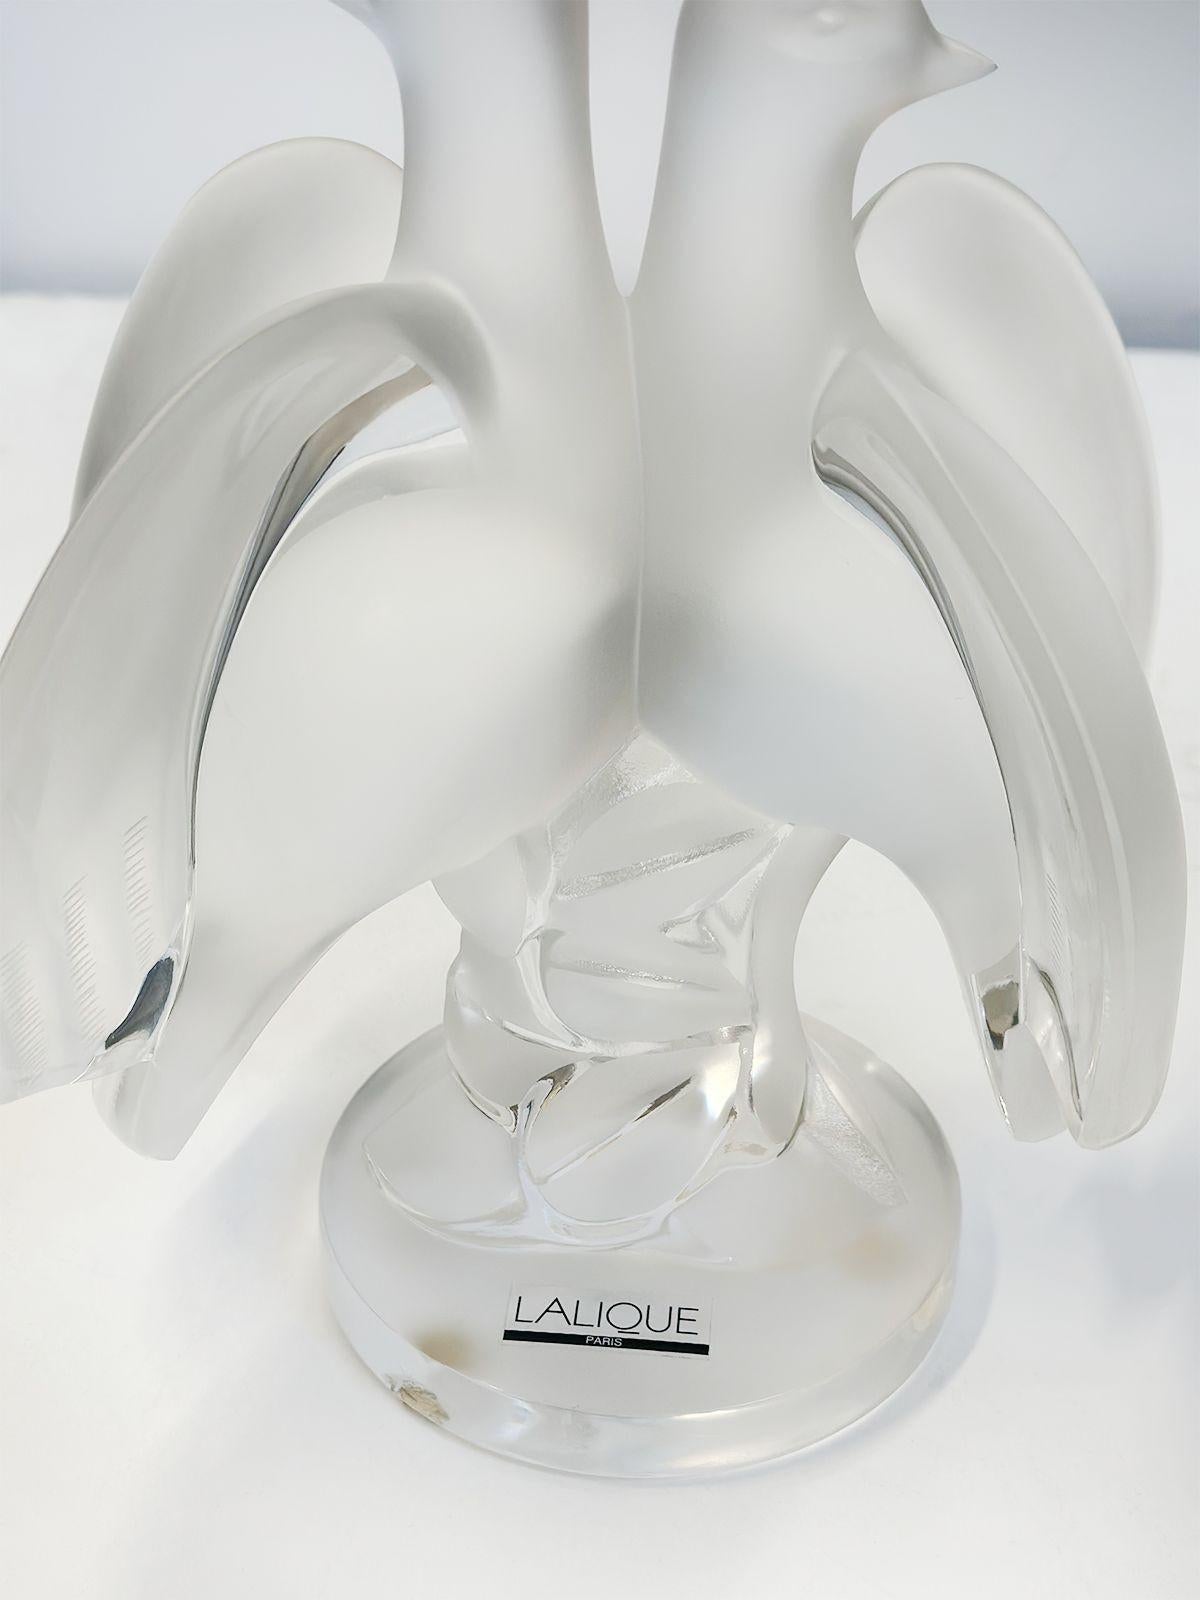 French Art Nouveau Lalique Crystal 